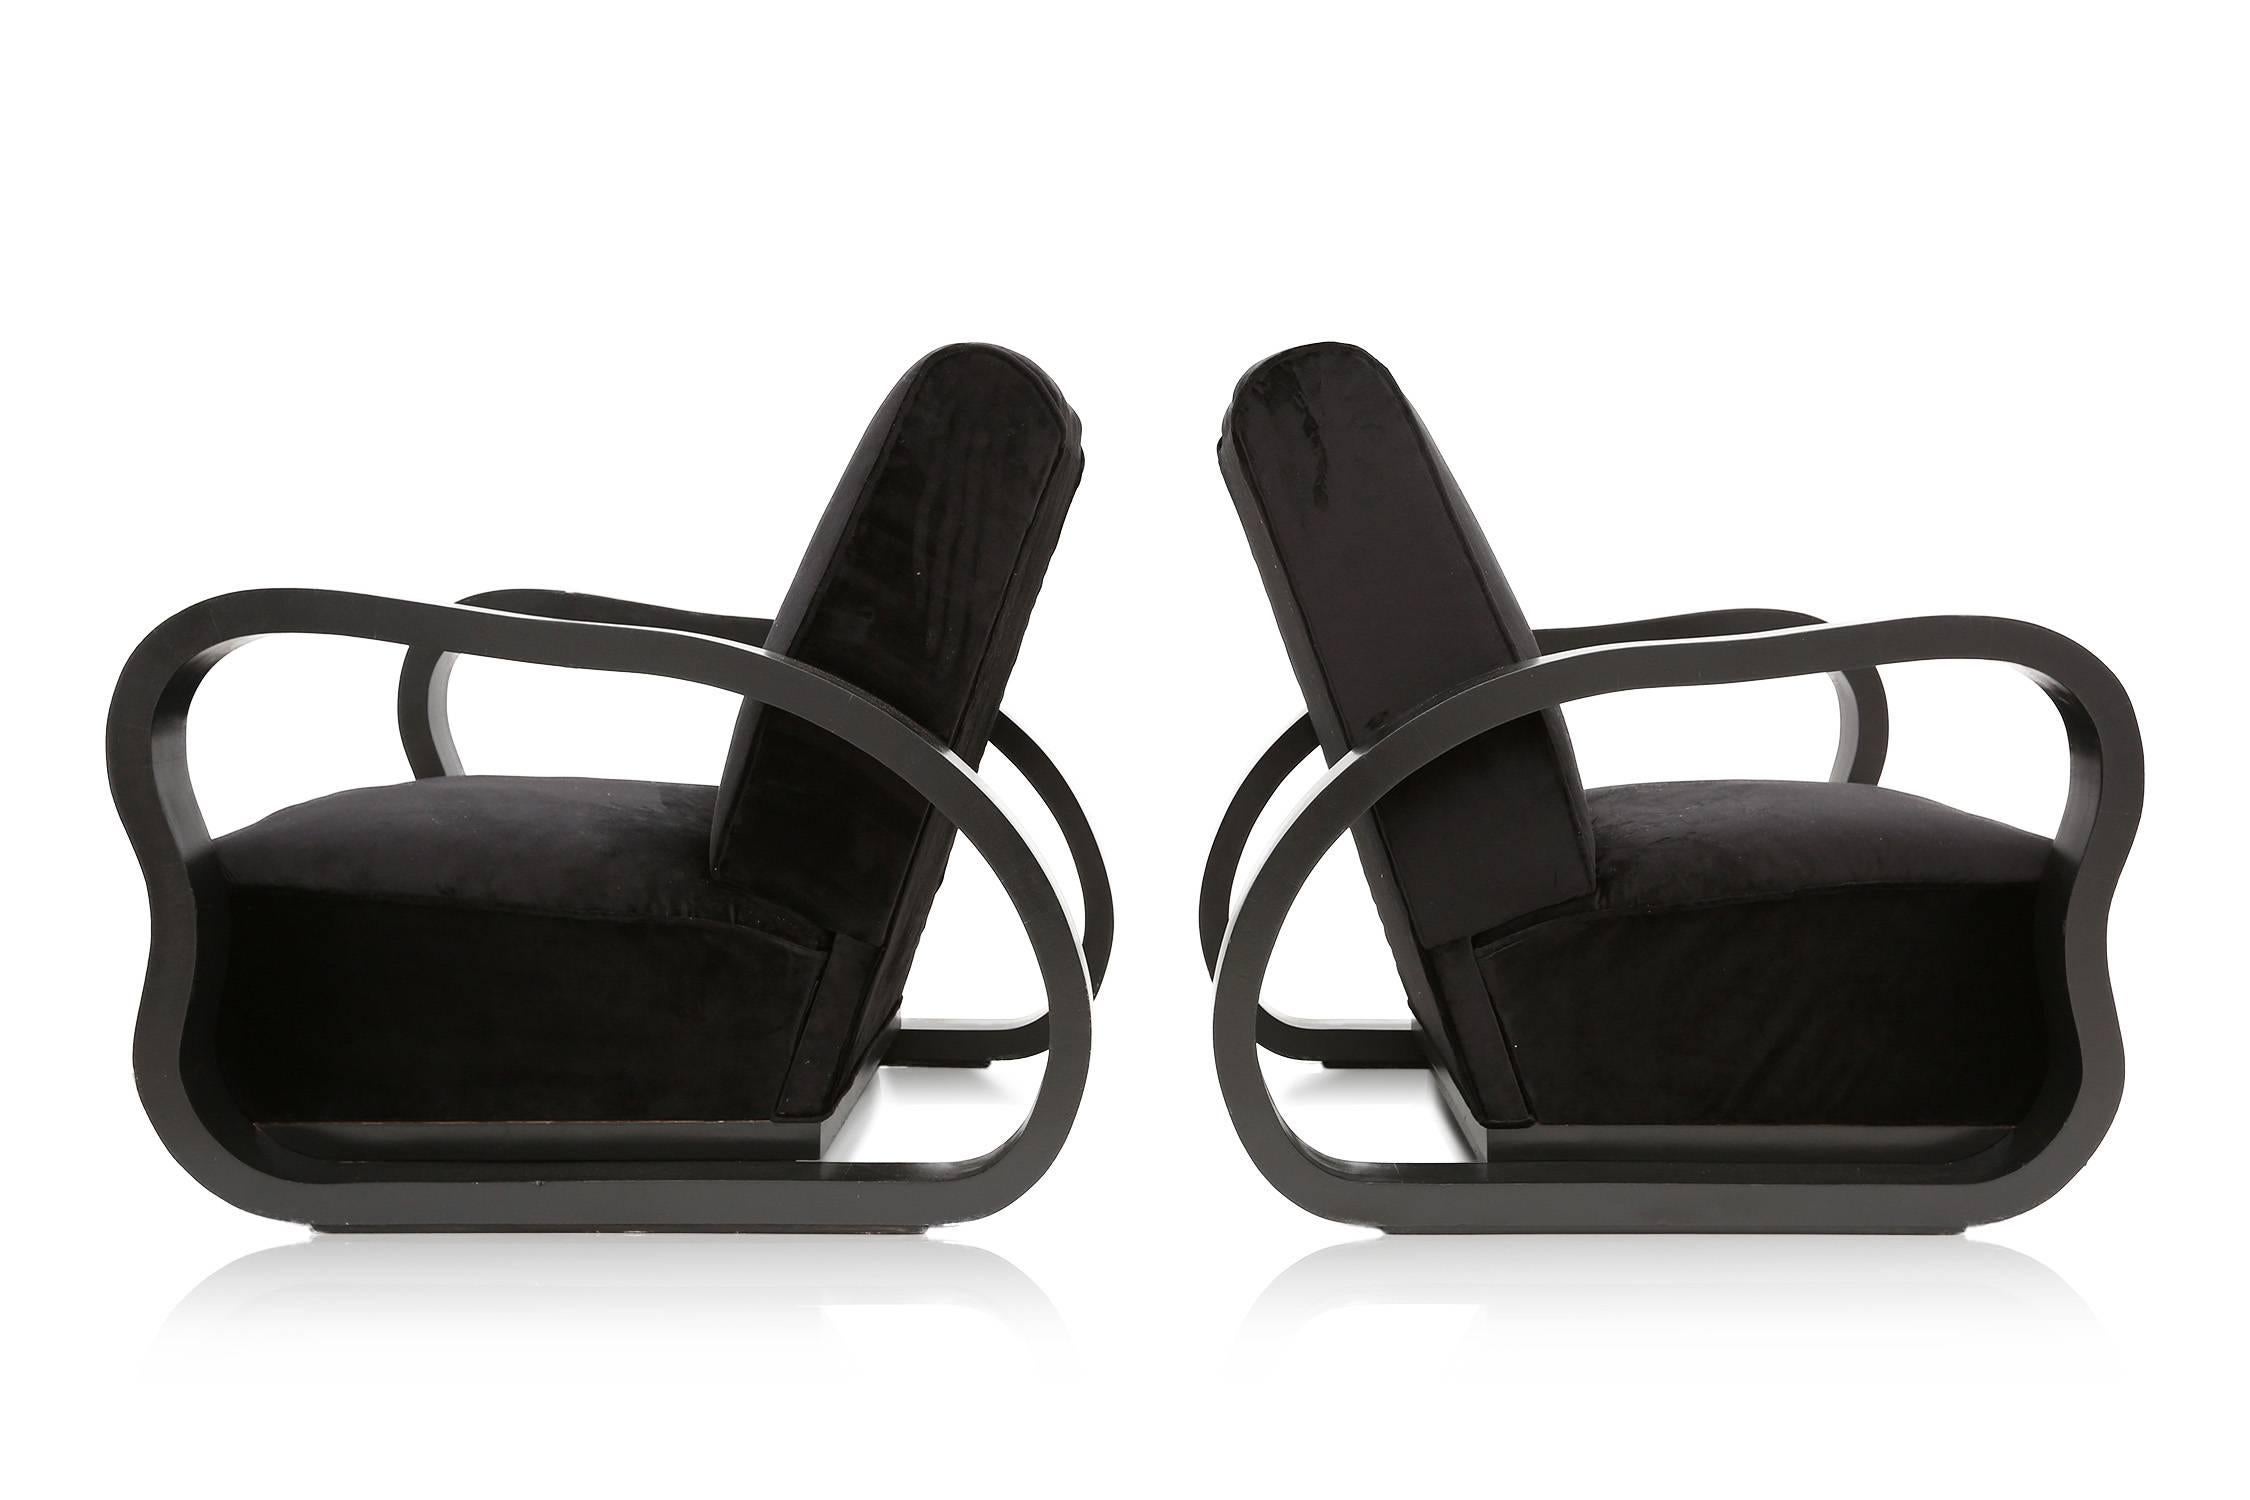 Art Deco modern easy chair.
Black ebonized frame.
Black velvet upholstery.

Continental European, 1940s. 

Measures: H 85 cm, W 78 cm, D 106 cm.